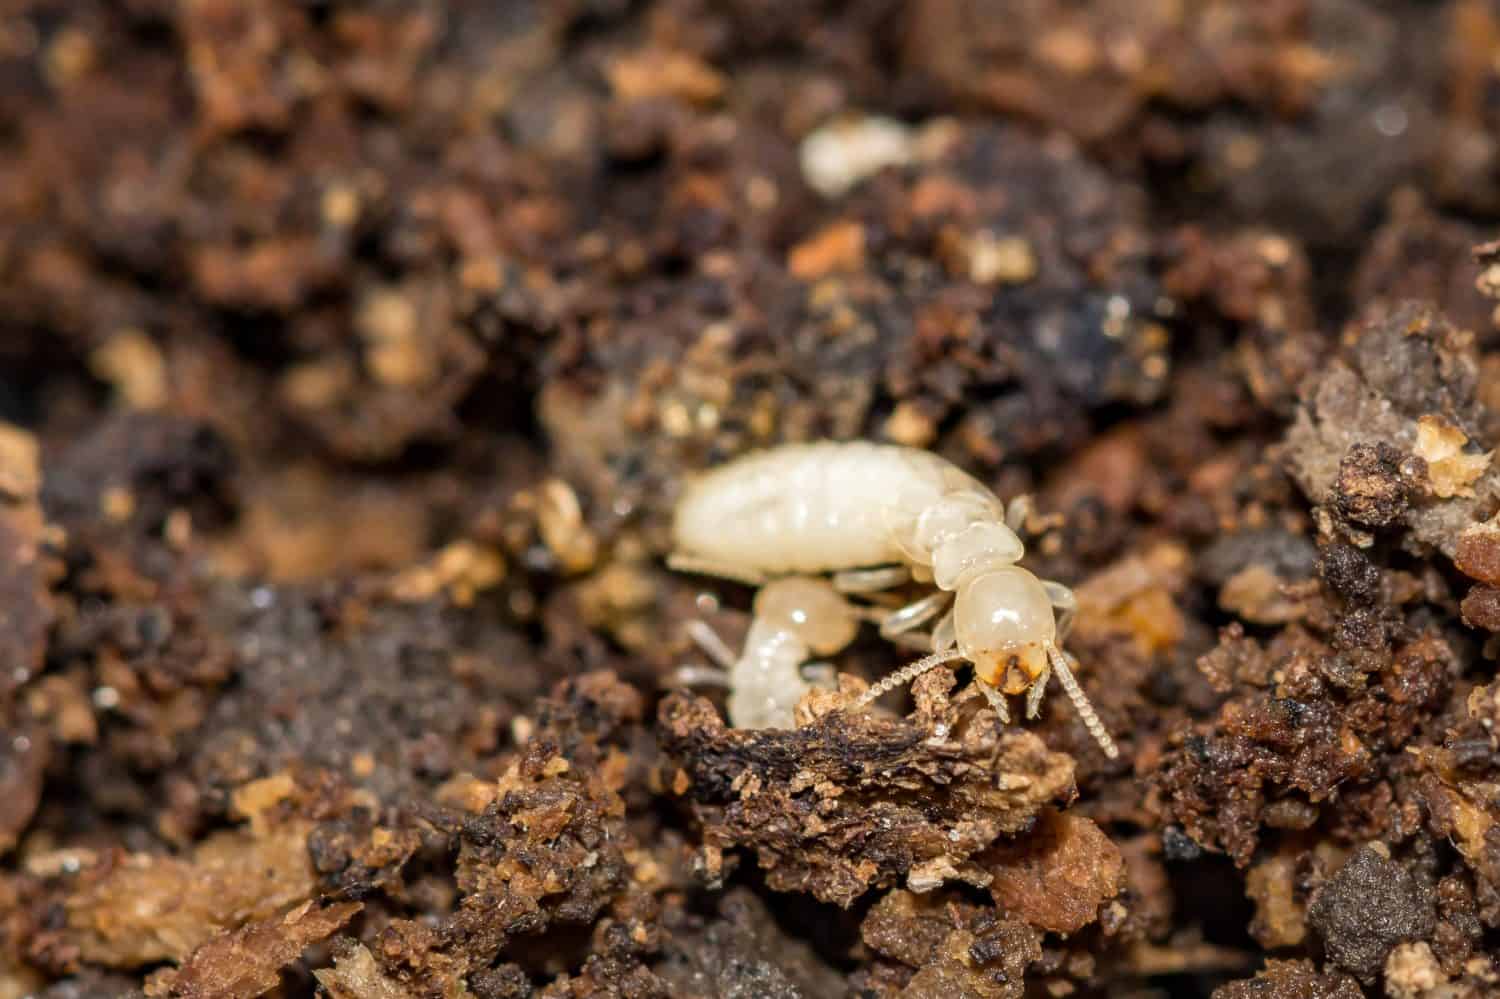 Eastern Subterranean Termite - Reticulitermes flavipes